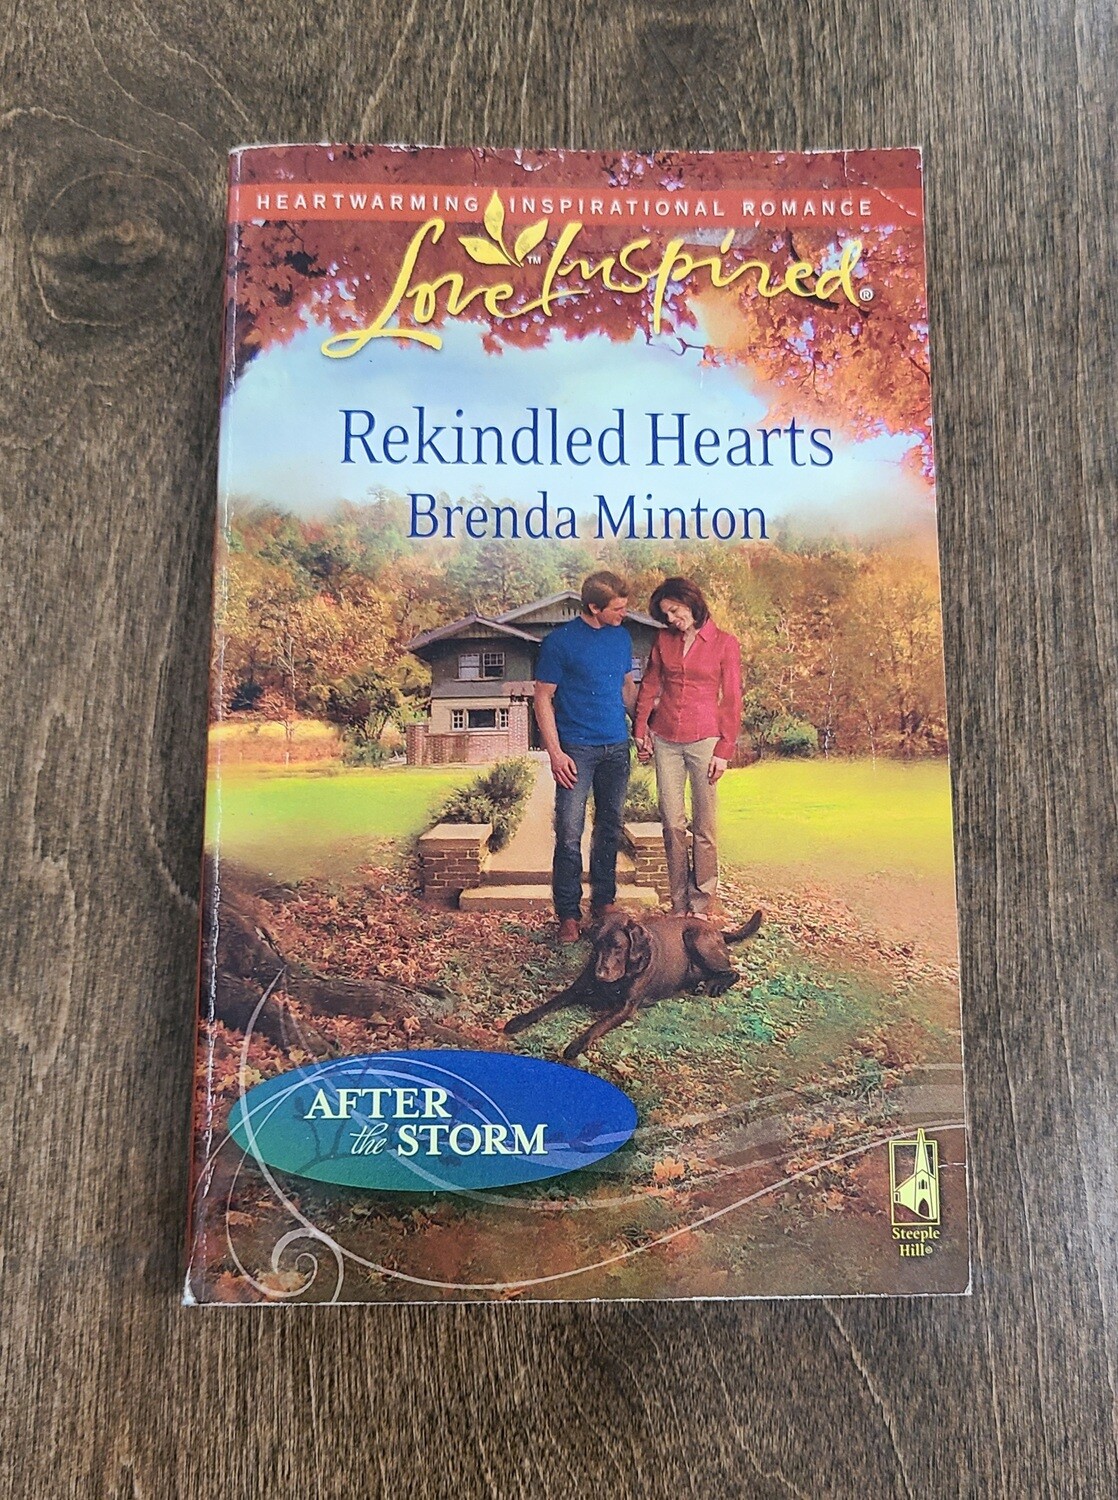 Rekindled Hearts by Brenda Minton